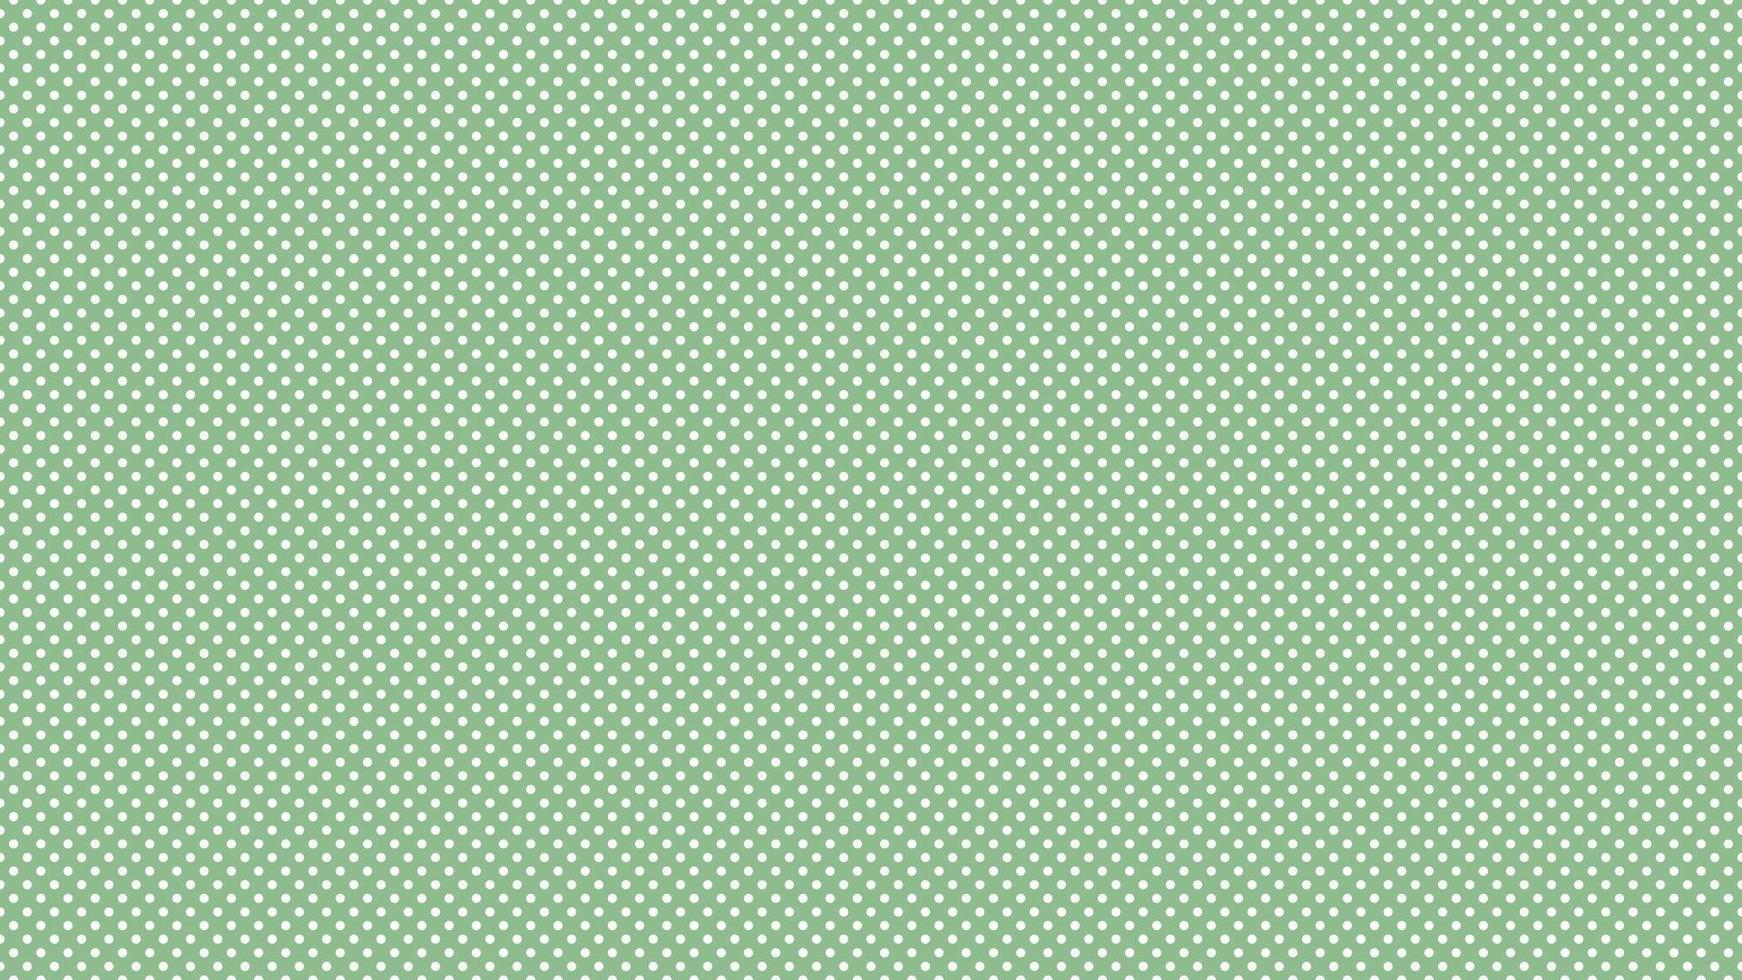 Weiß Farbe Polka Punkte Über dunkel Meer Grün Hintergrund vektor